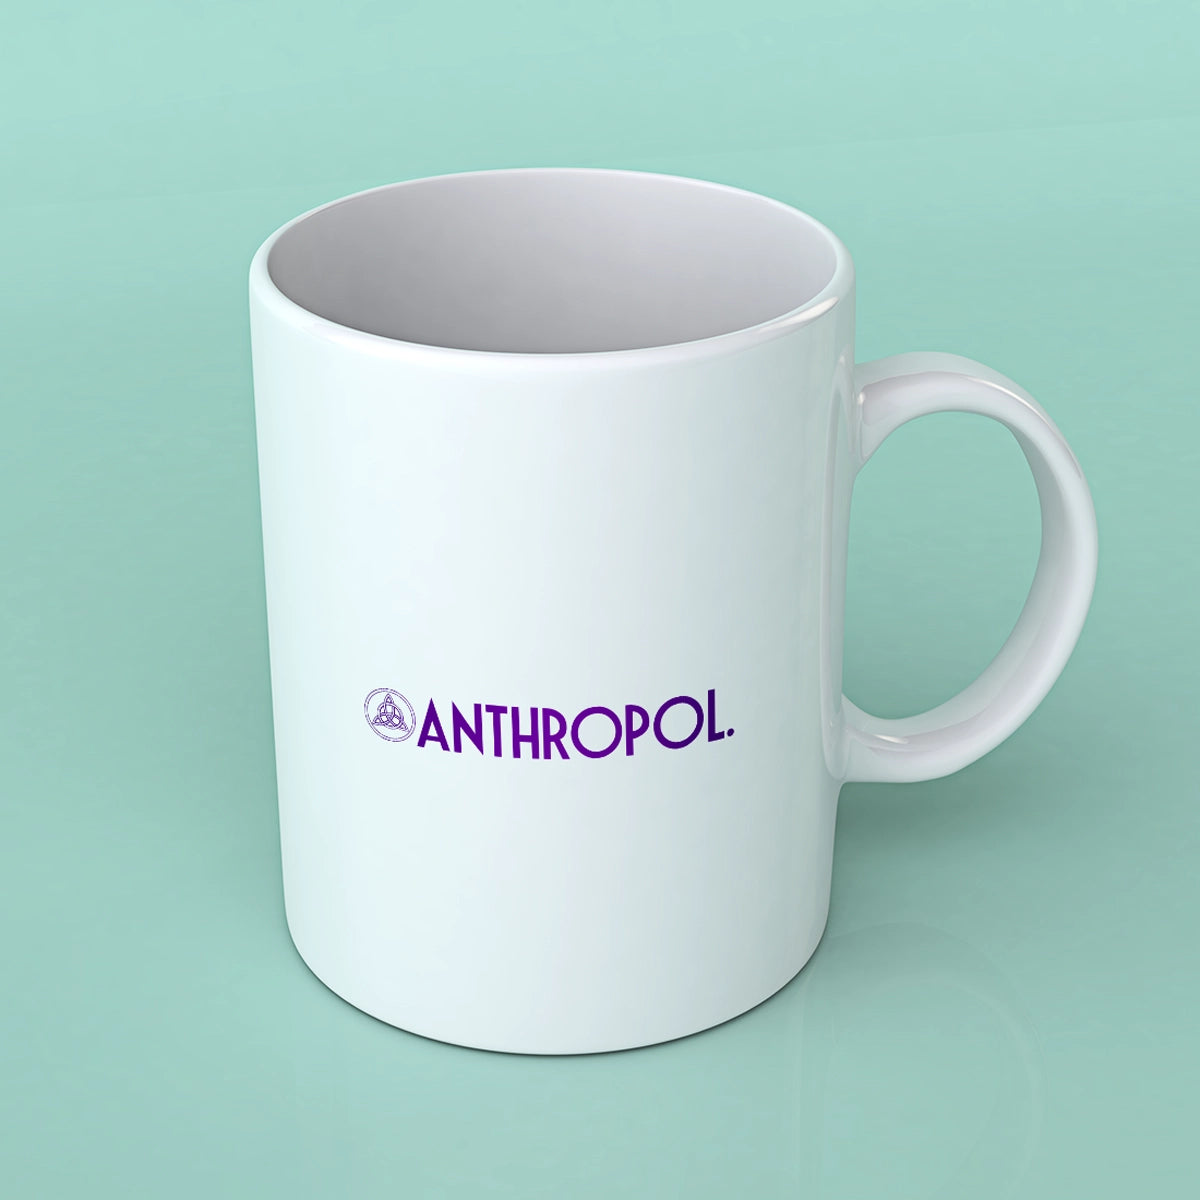 Anthropol.com